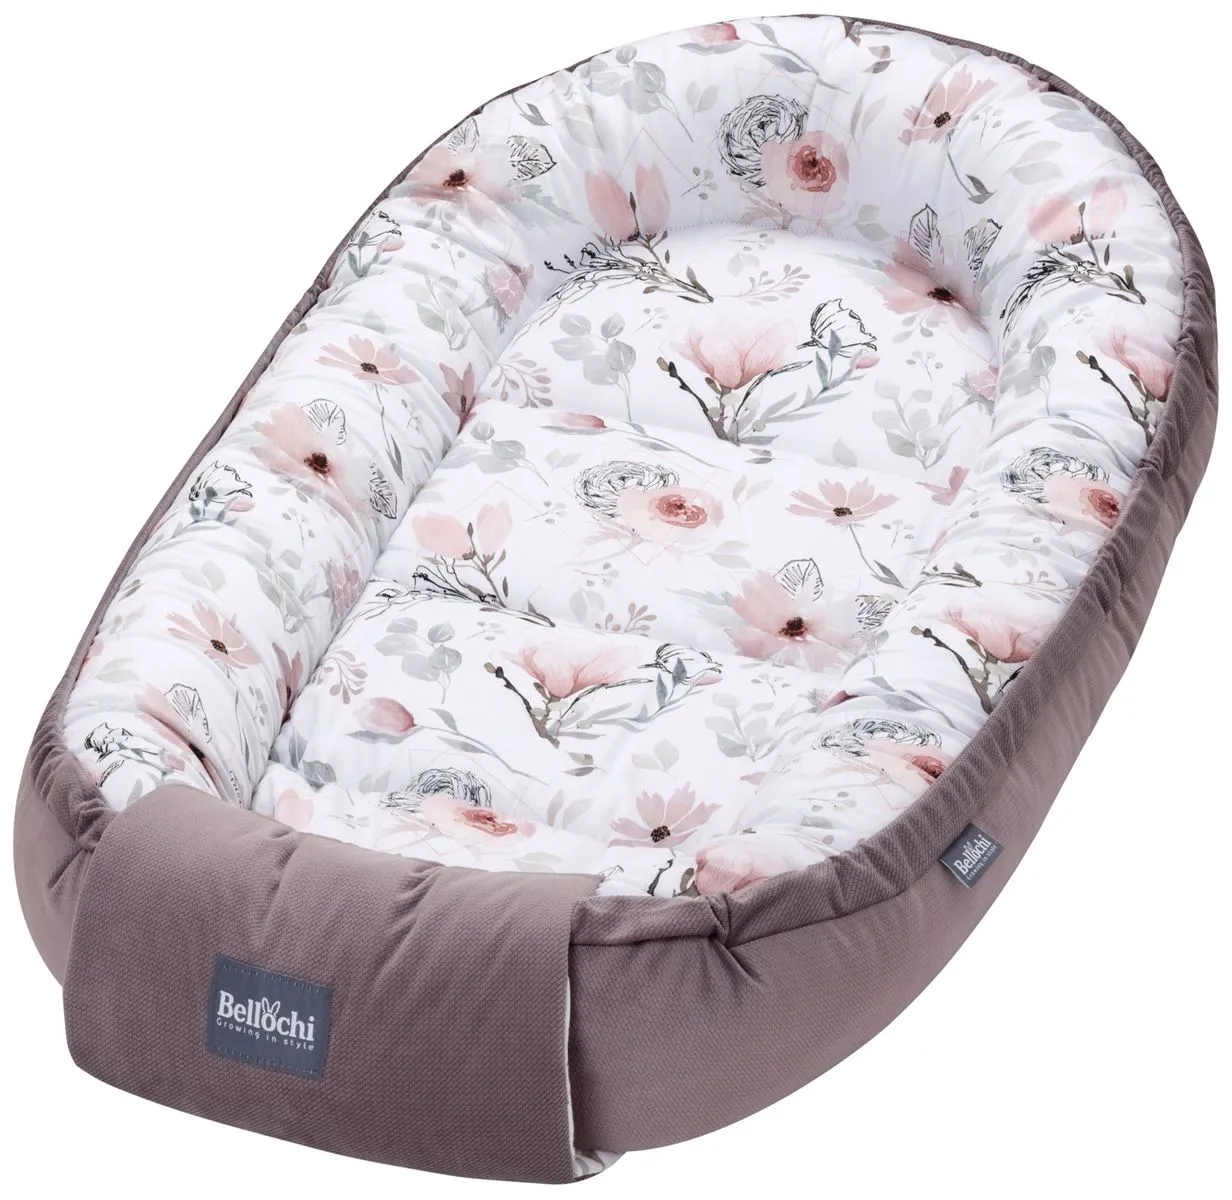 Baby nest 100×60 cm choco fantasy